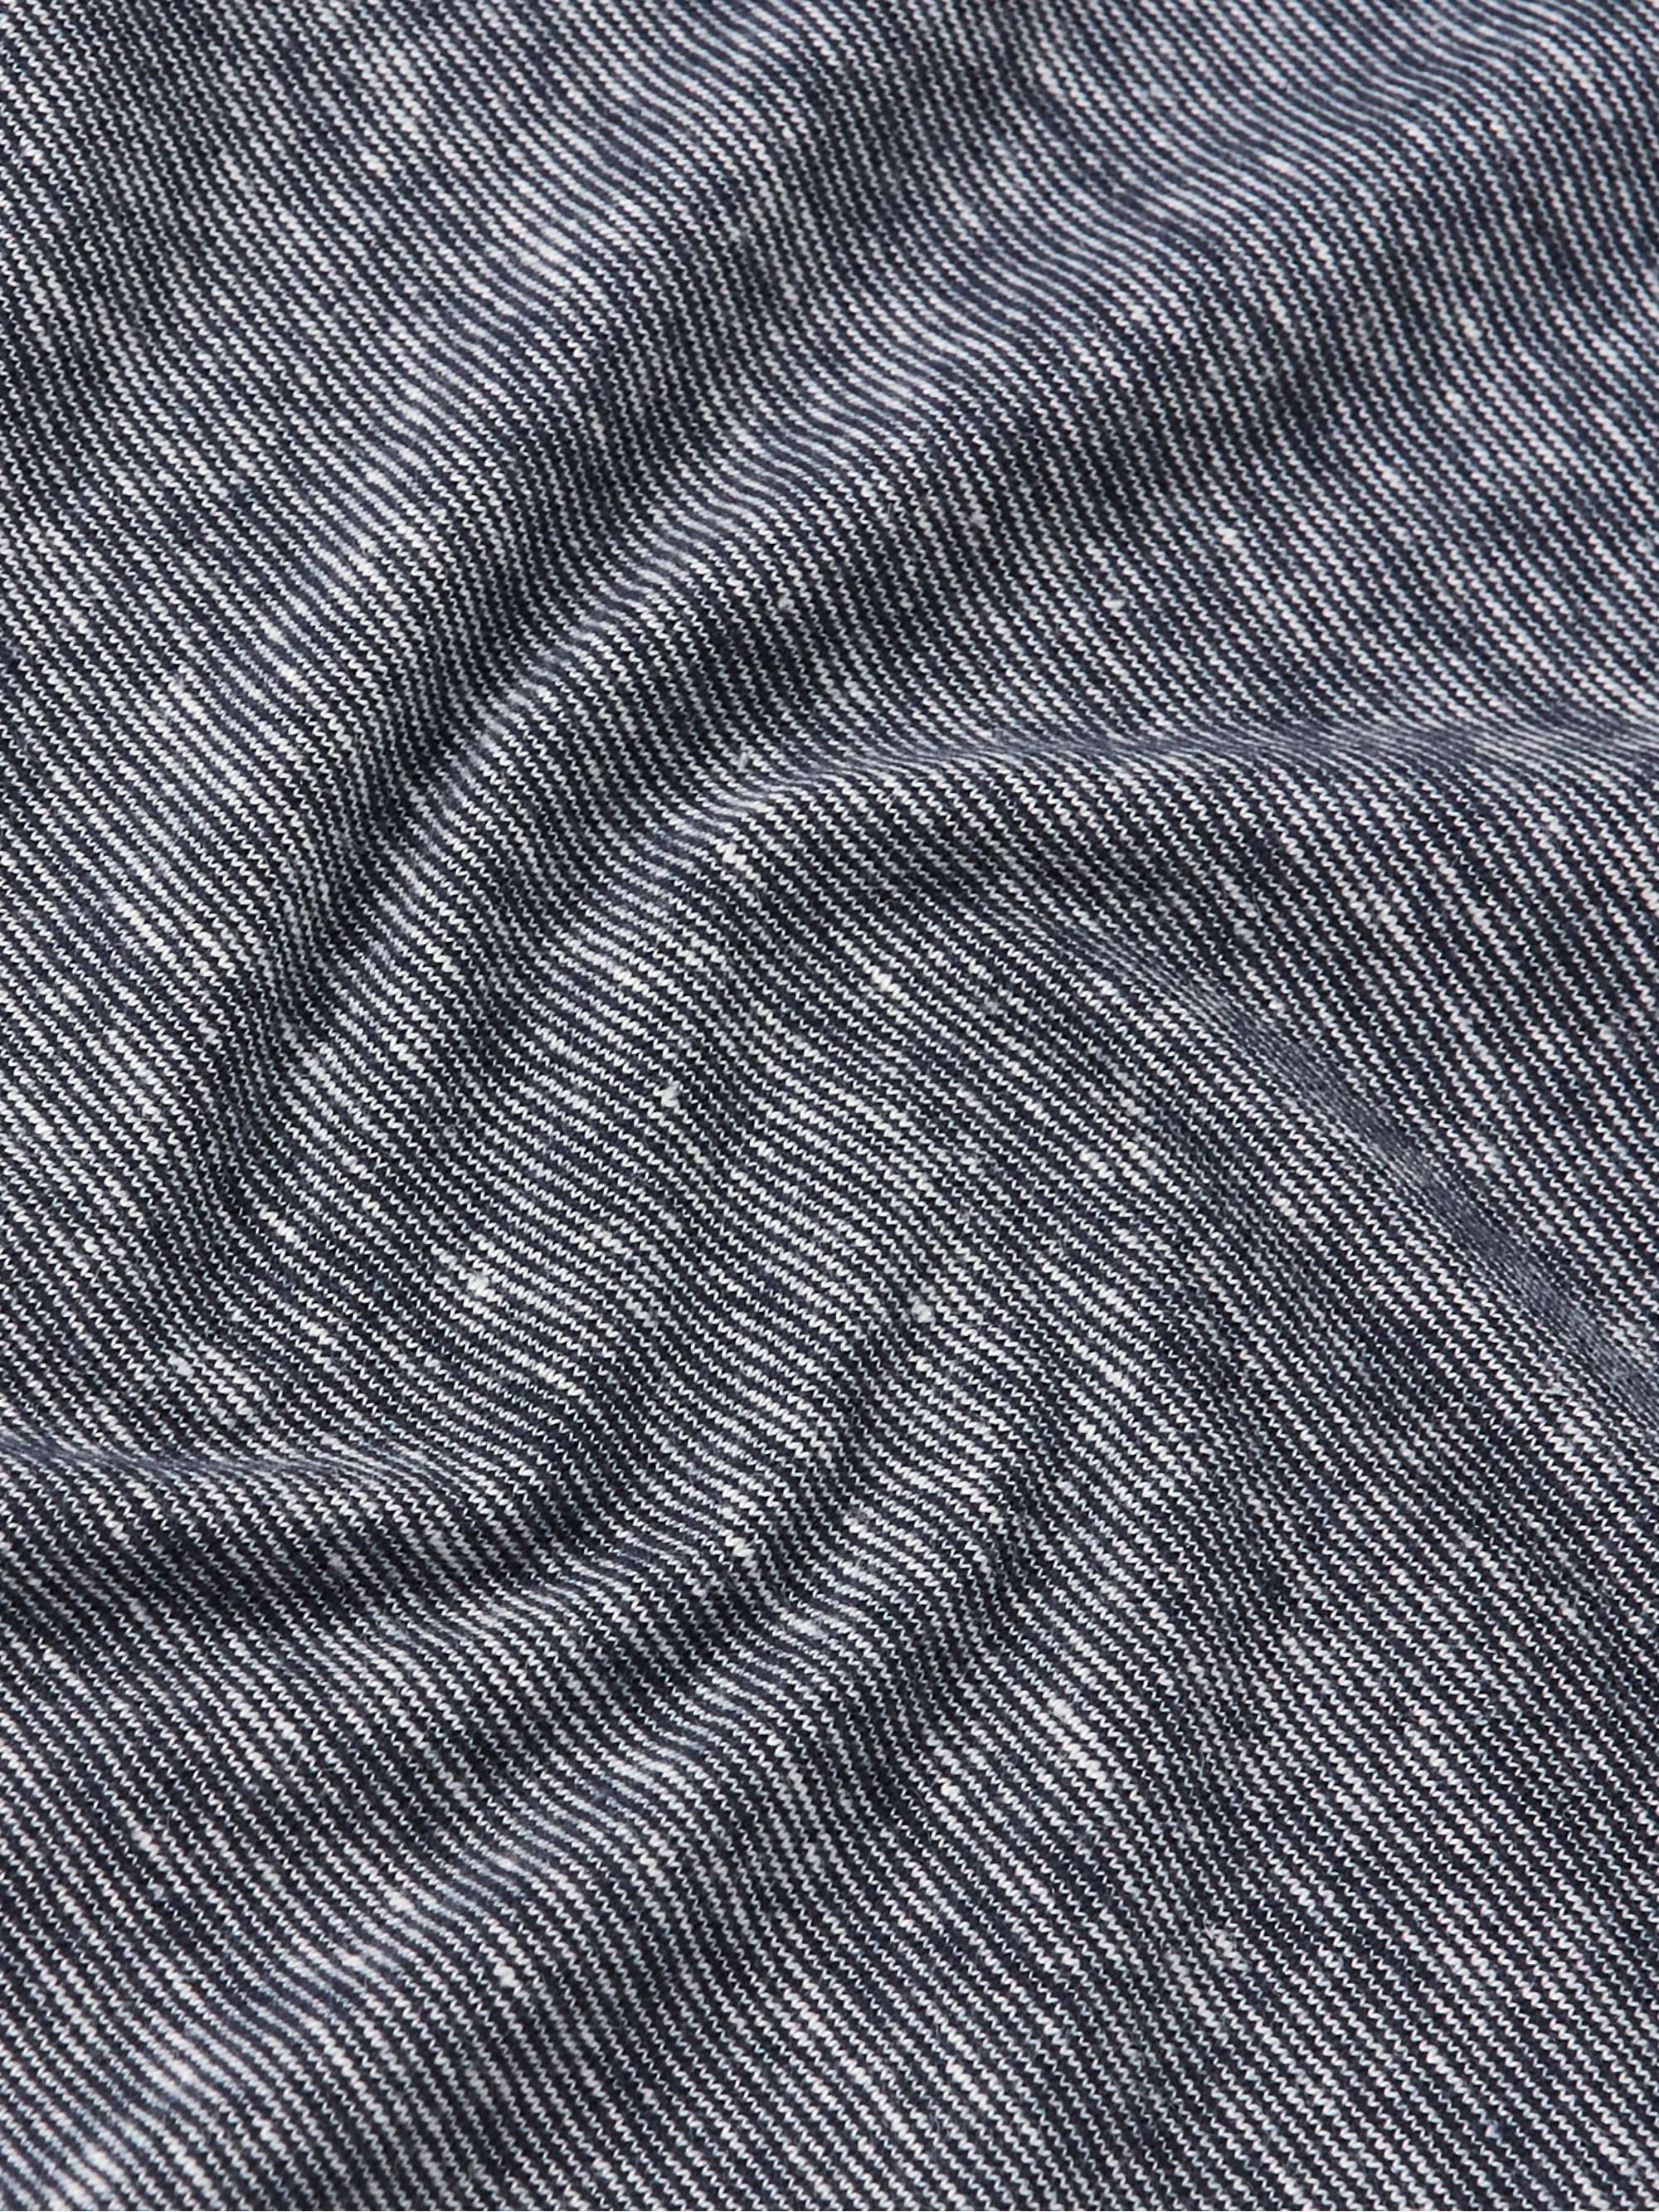 OFFICINE GÉNÉRALE Slim-Fit Striped Cotton and Linen-Blend T-Shirt